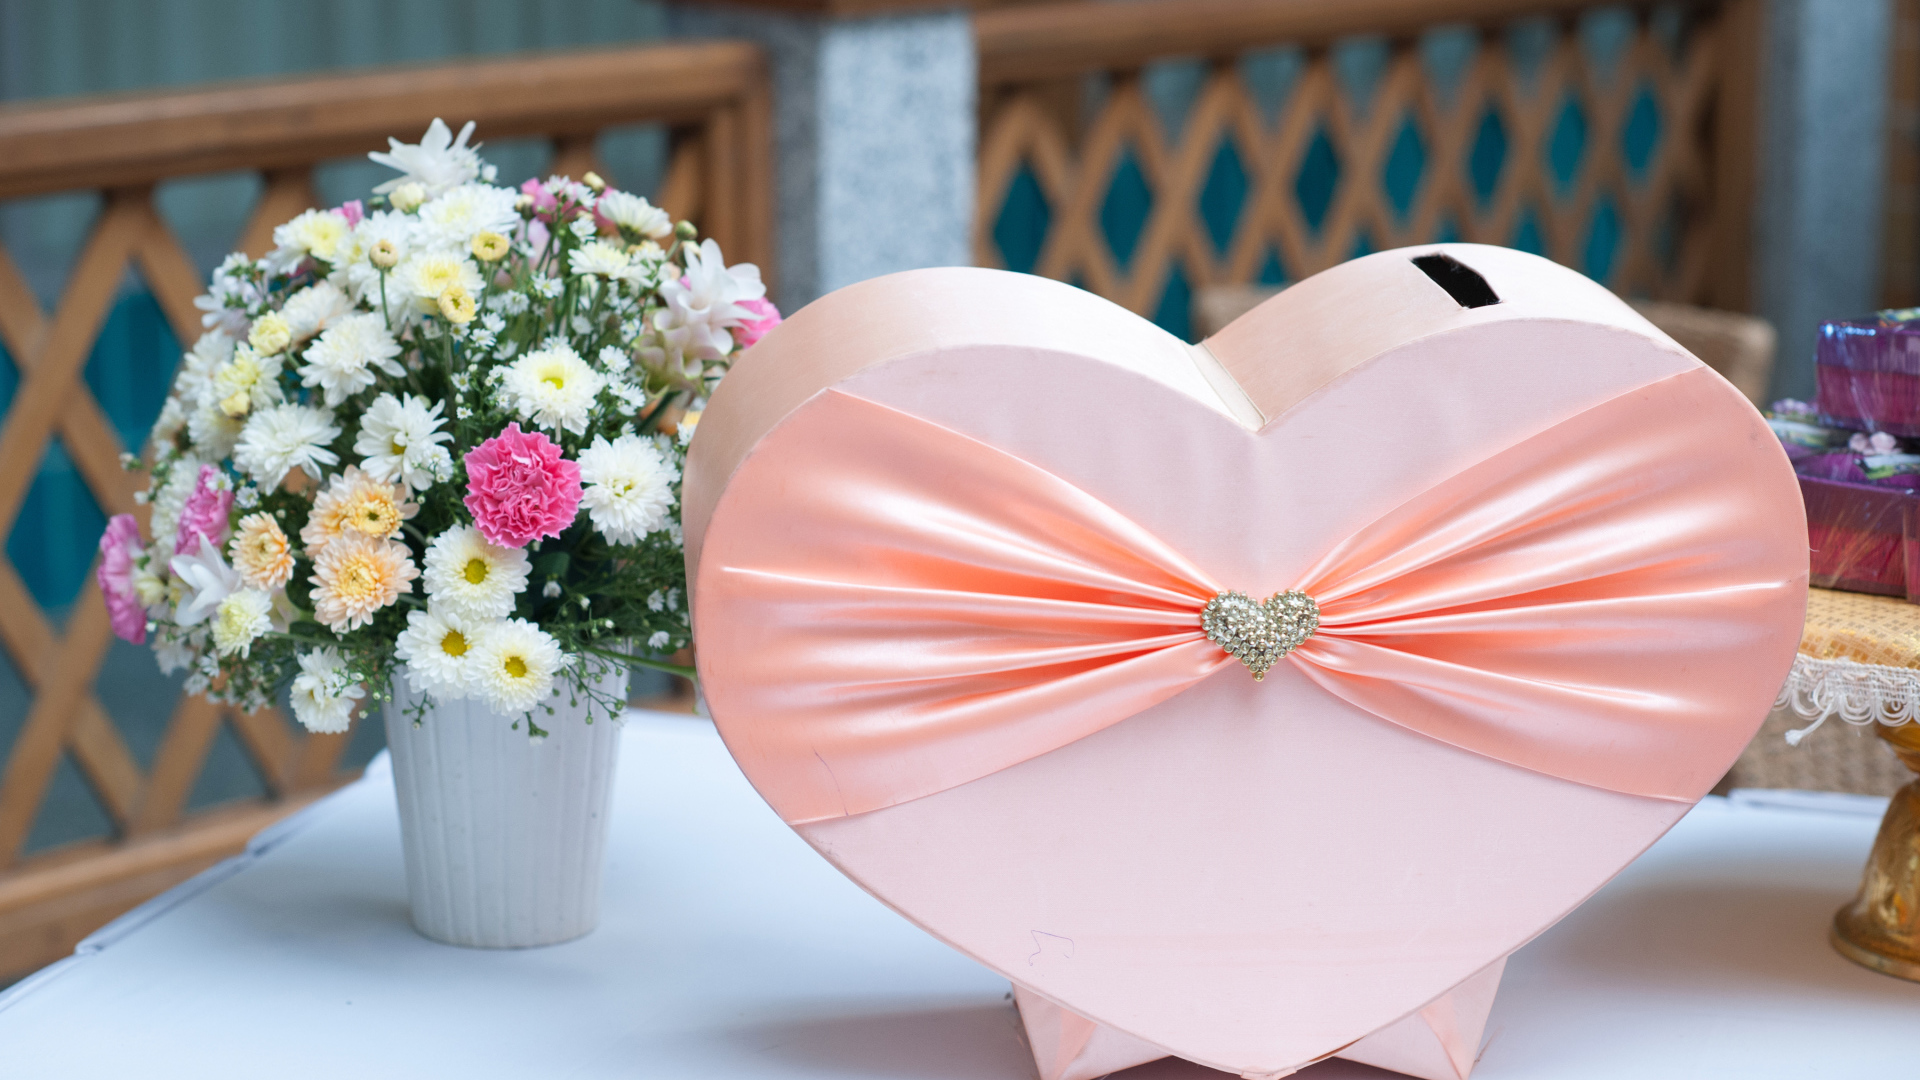 Большая розовая коробка в форме сердца на столе с букетом хризантем